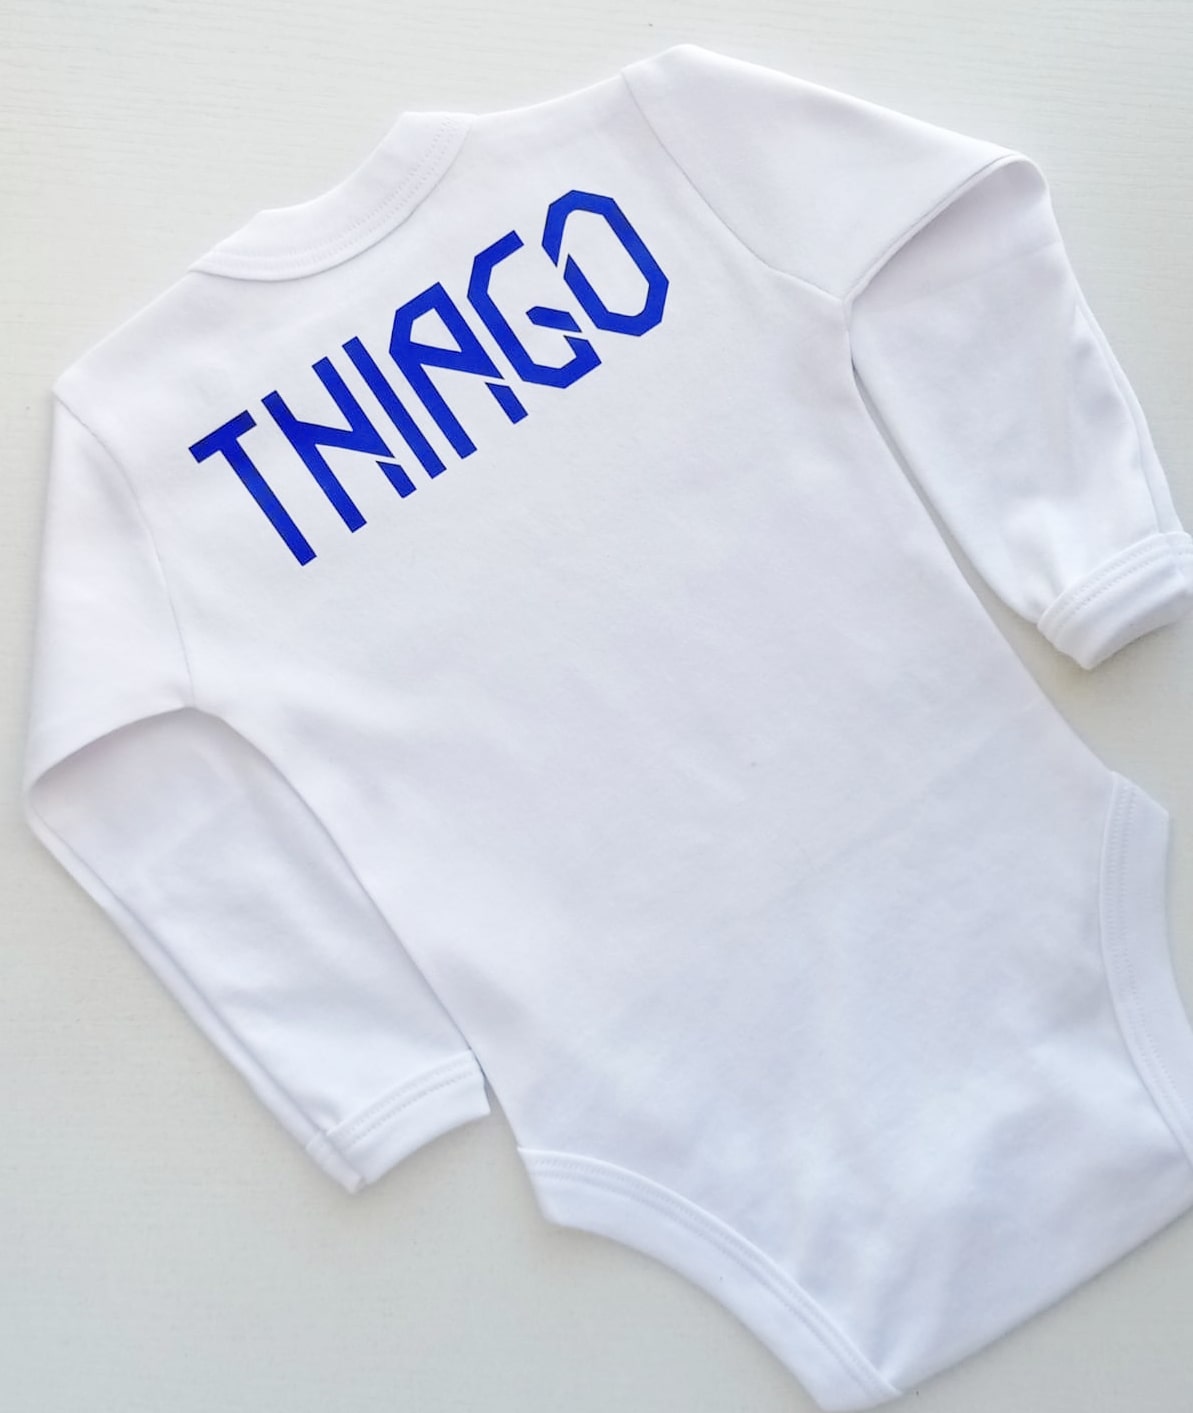 Bavoir bebé de algodón personalizado del Real Madrid